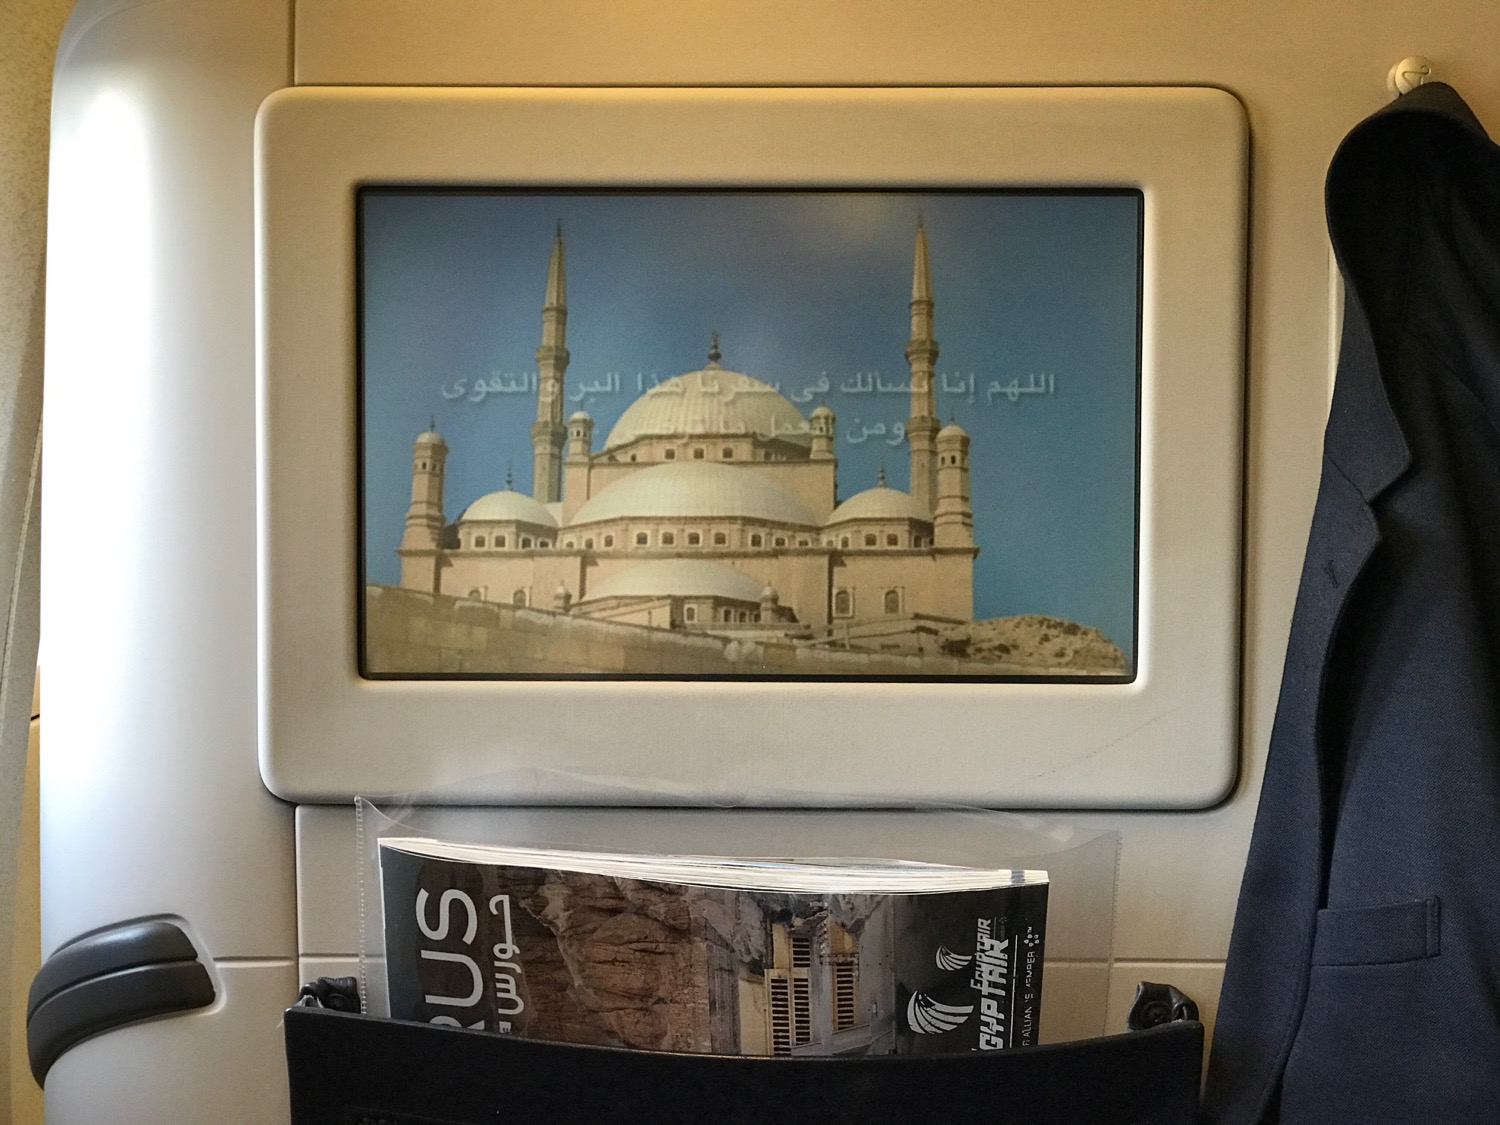 EgpytAir London to Cairo 777-300 Business Class - 25